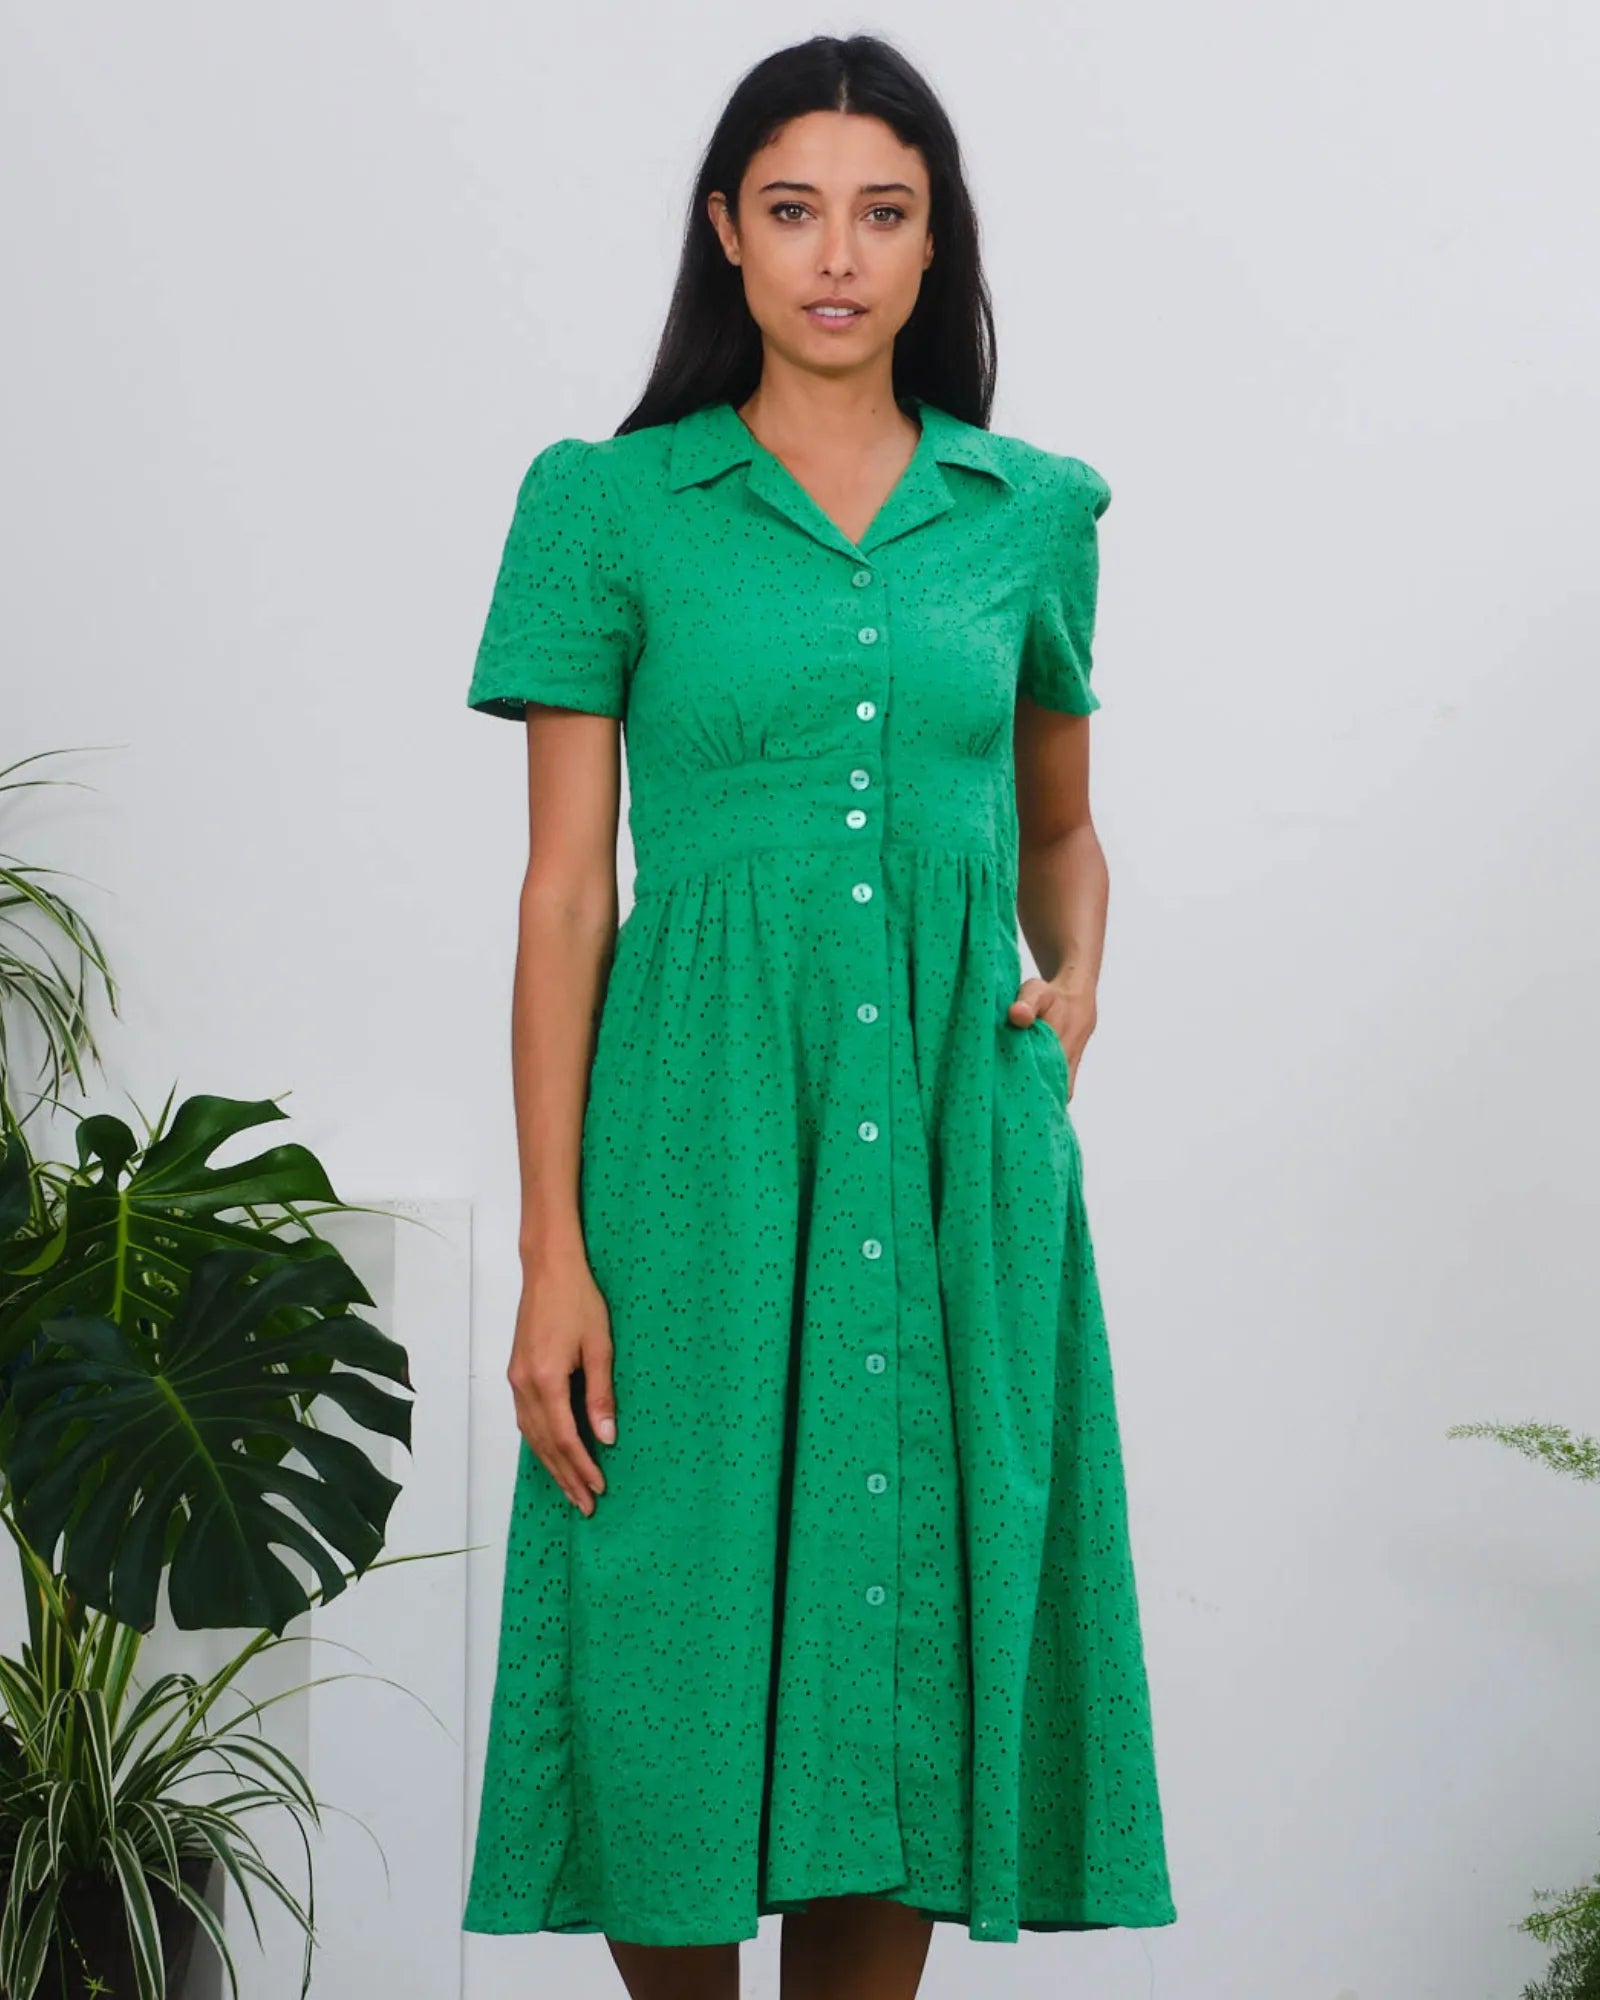 Birdy Dress - Schiffly Green